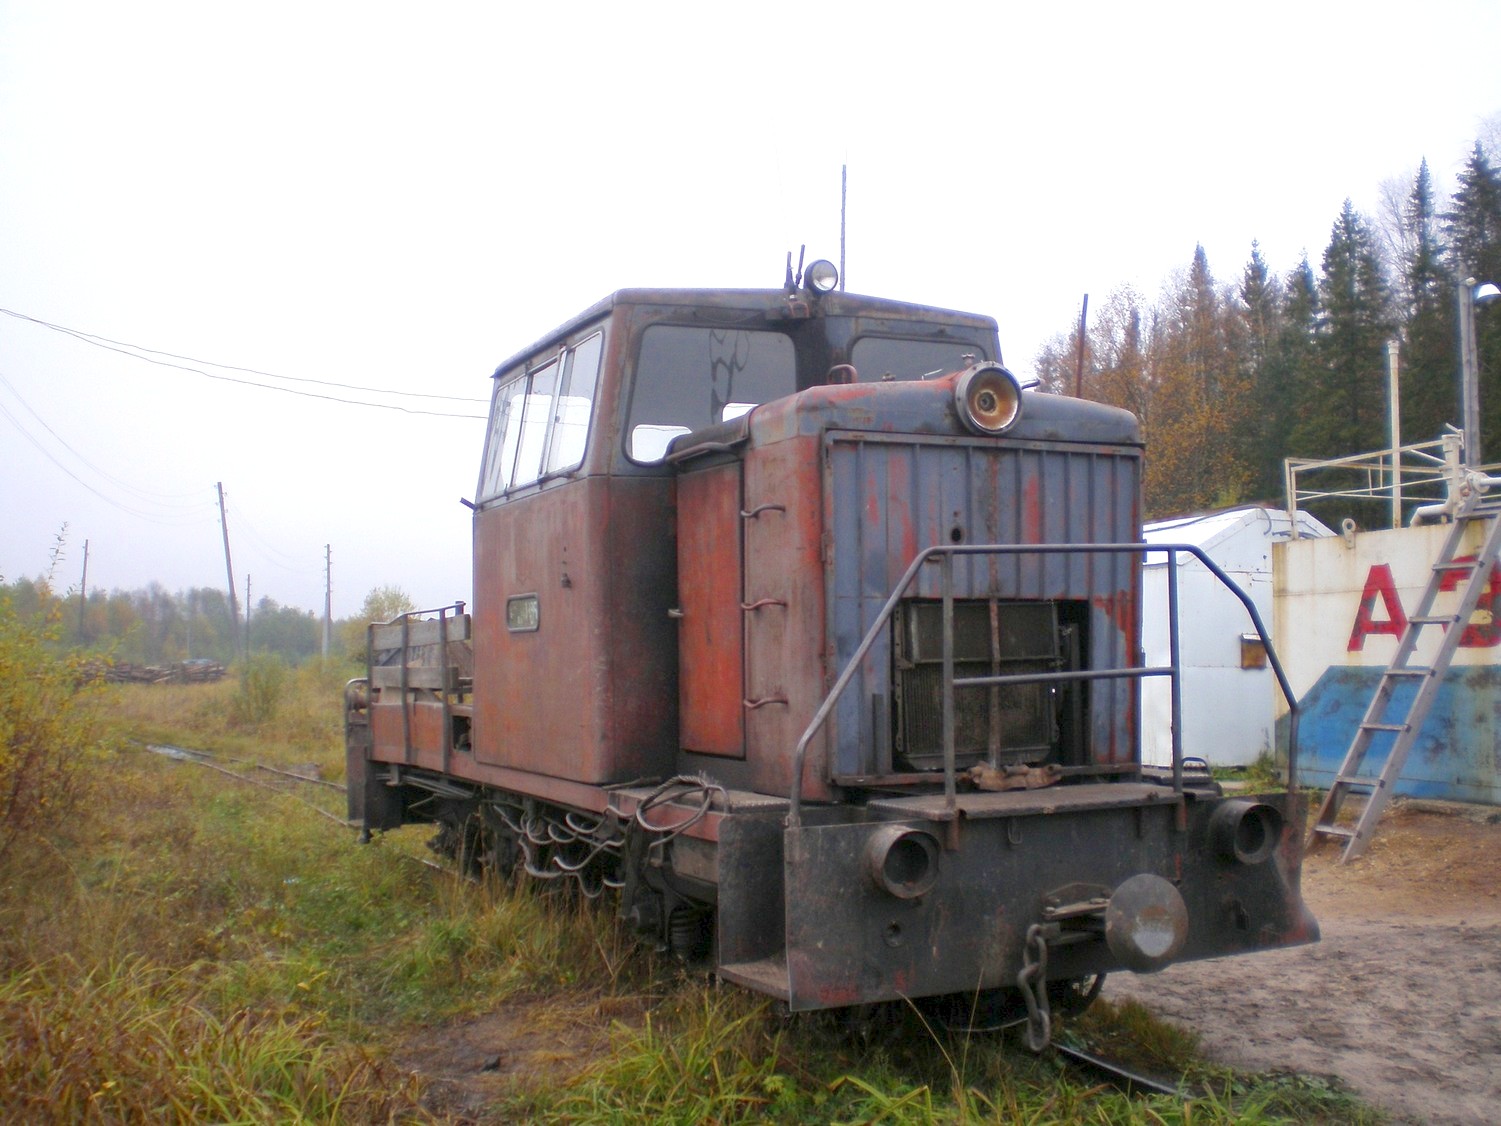 Лунданская узкоколейная железная дорога  —  фотографии, сделанные в 2007 году (часть 2)